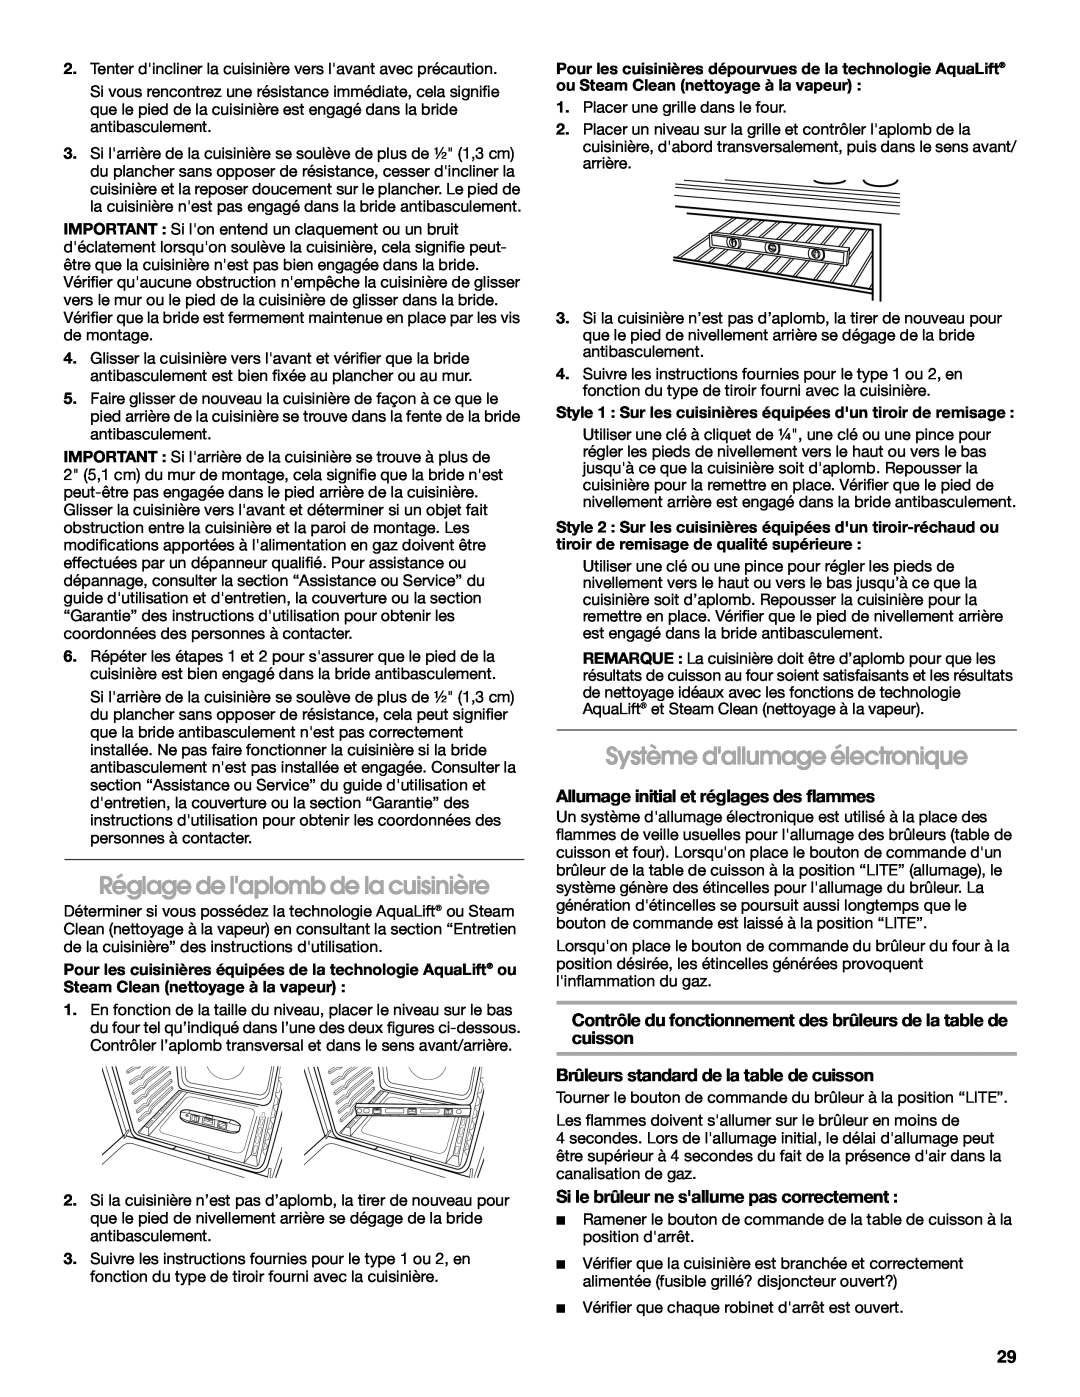 Whirlpool W10553363A installation instructions Réglage de laplomb de la cuisinière, Système dallumage électronique 